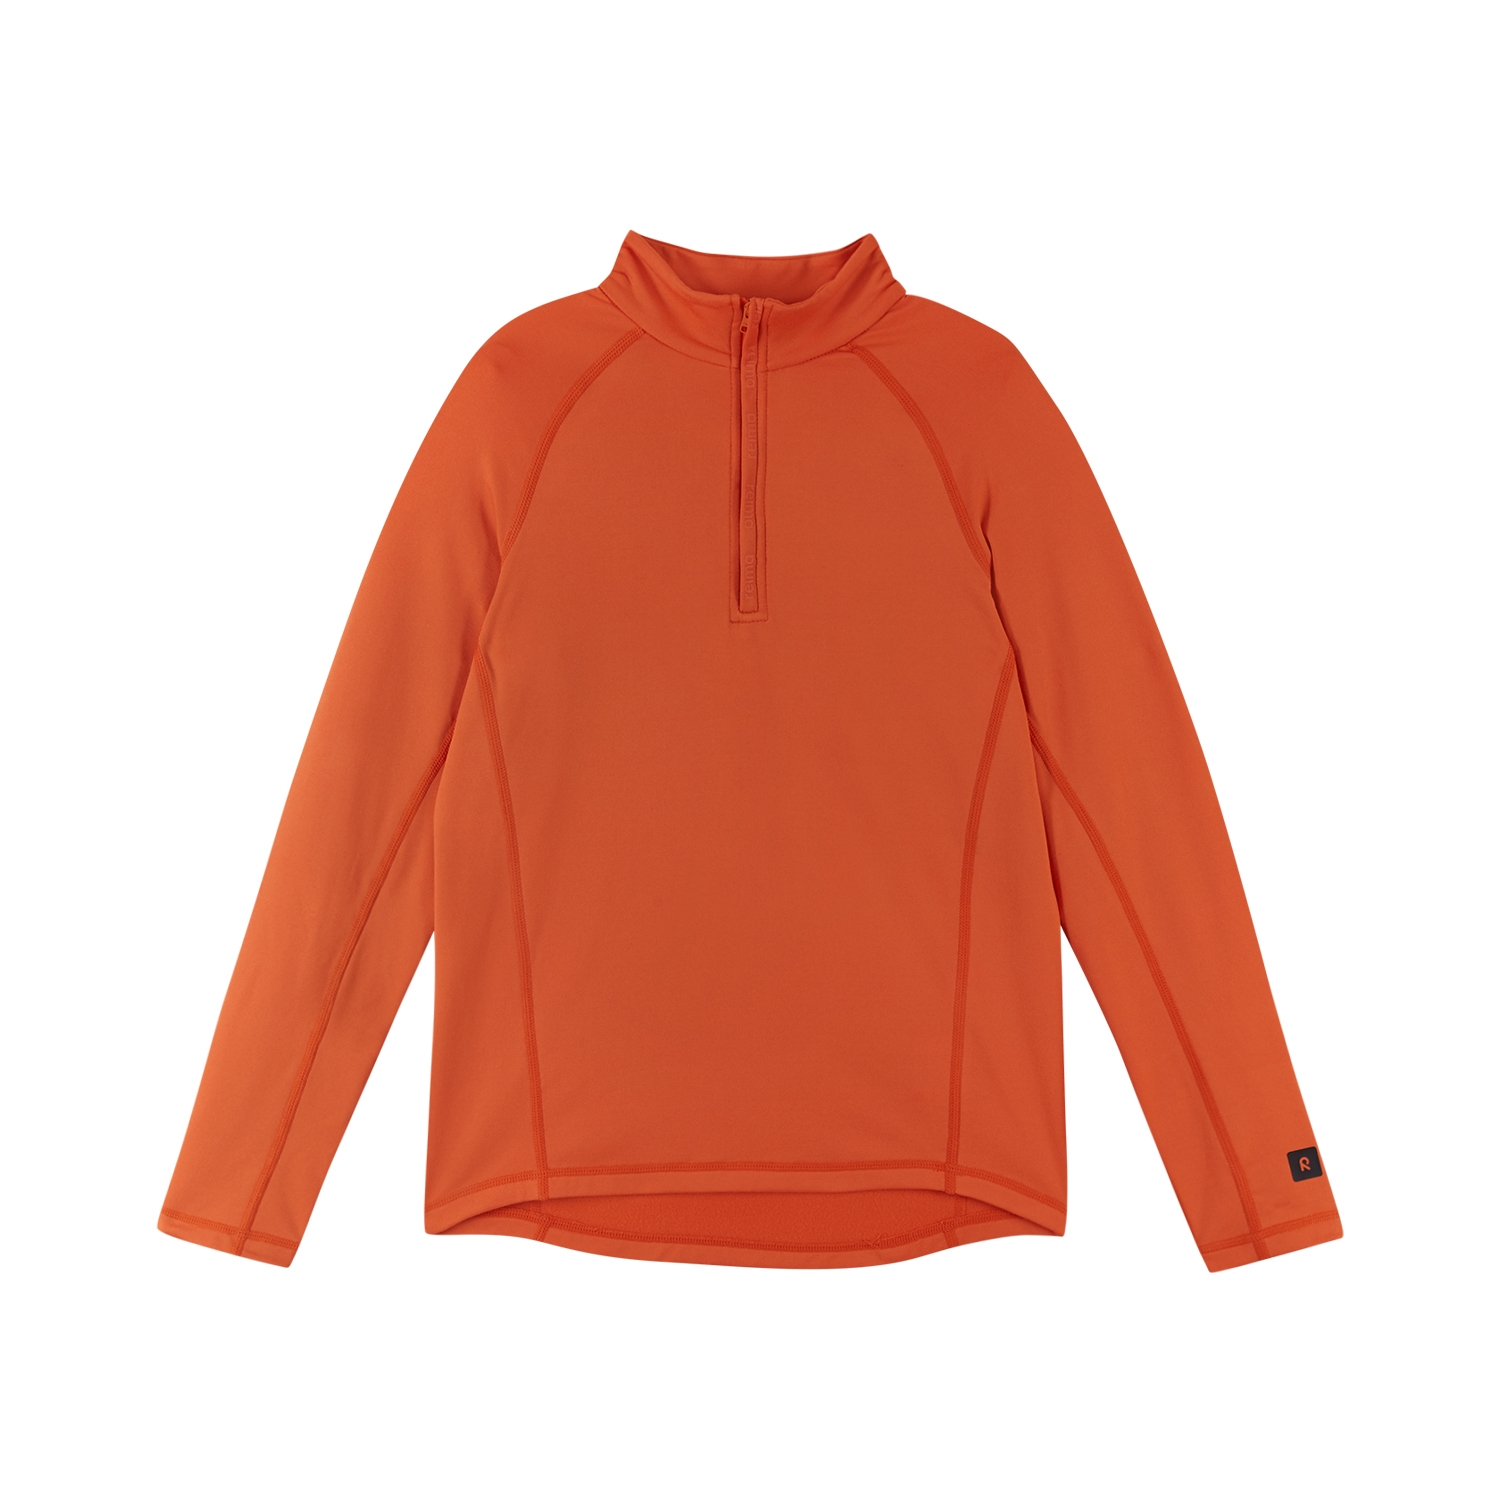 Bluza polarowa dla dziecka Reima Ladulle red orange - 116